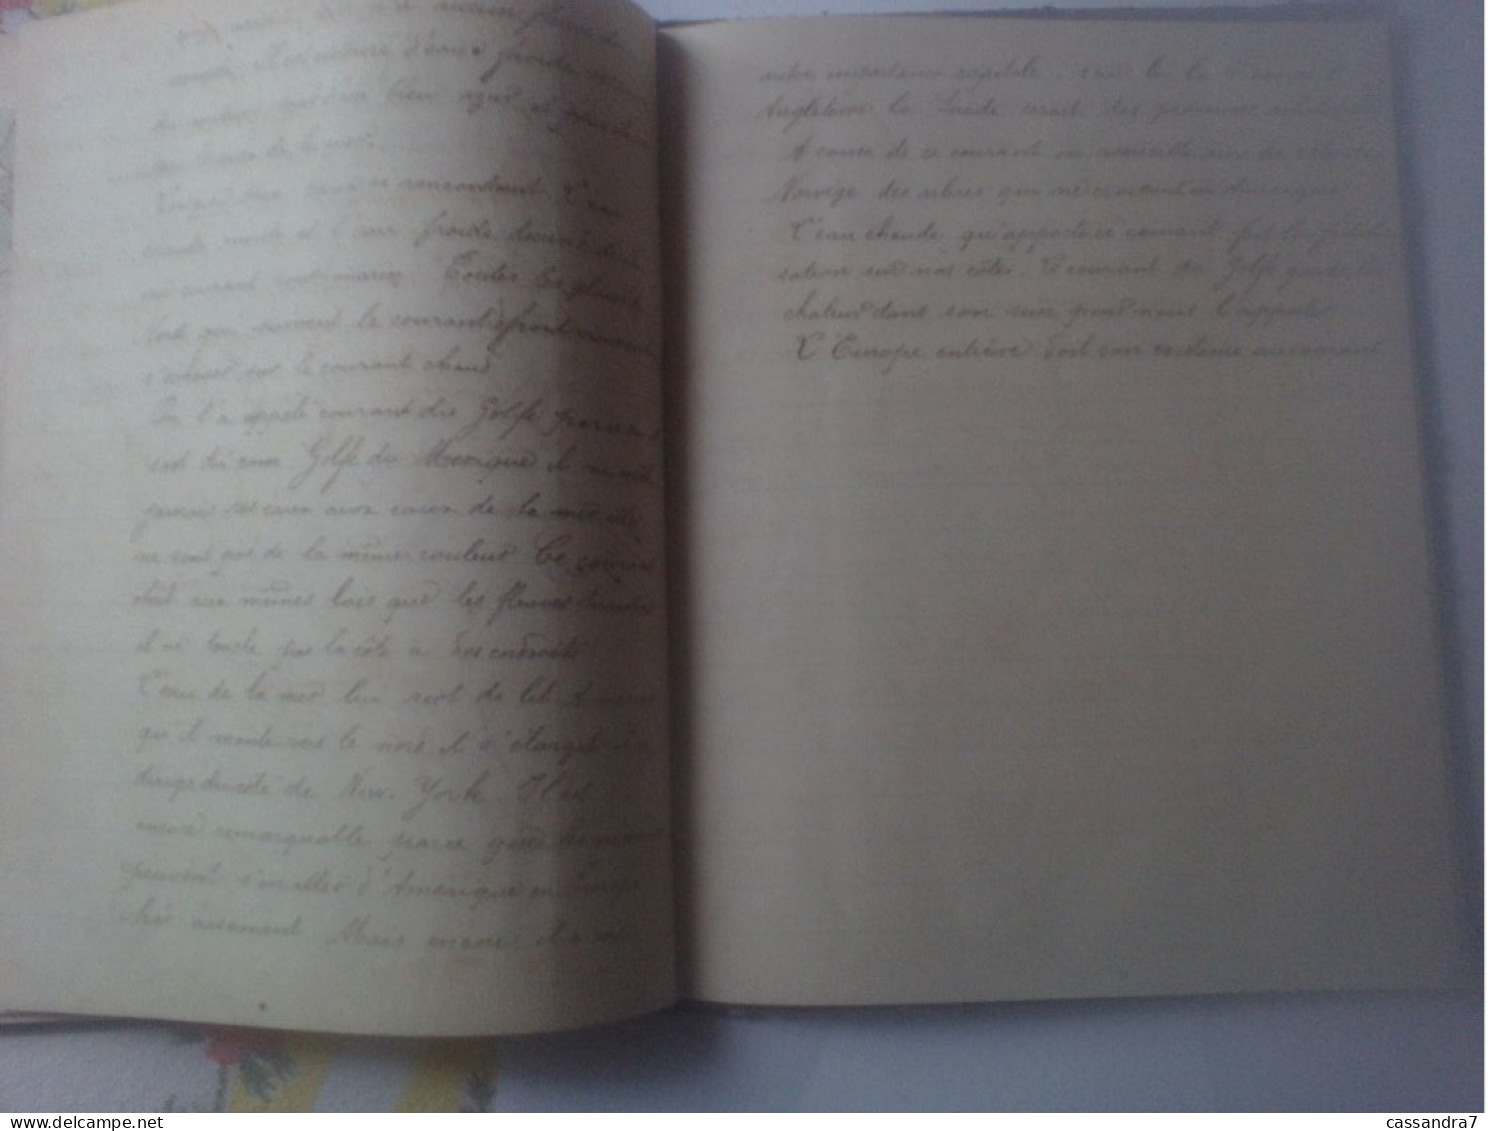 Scolaire - Carnet de Géographie à Lafargue Aramis acheté le 8 Décembre 1876 avec cartes et dessins manuscrits